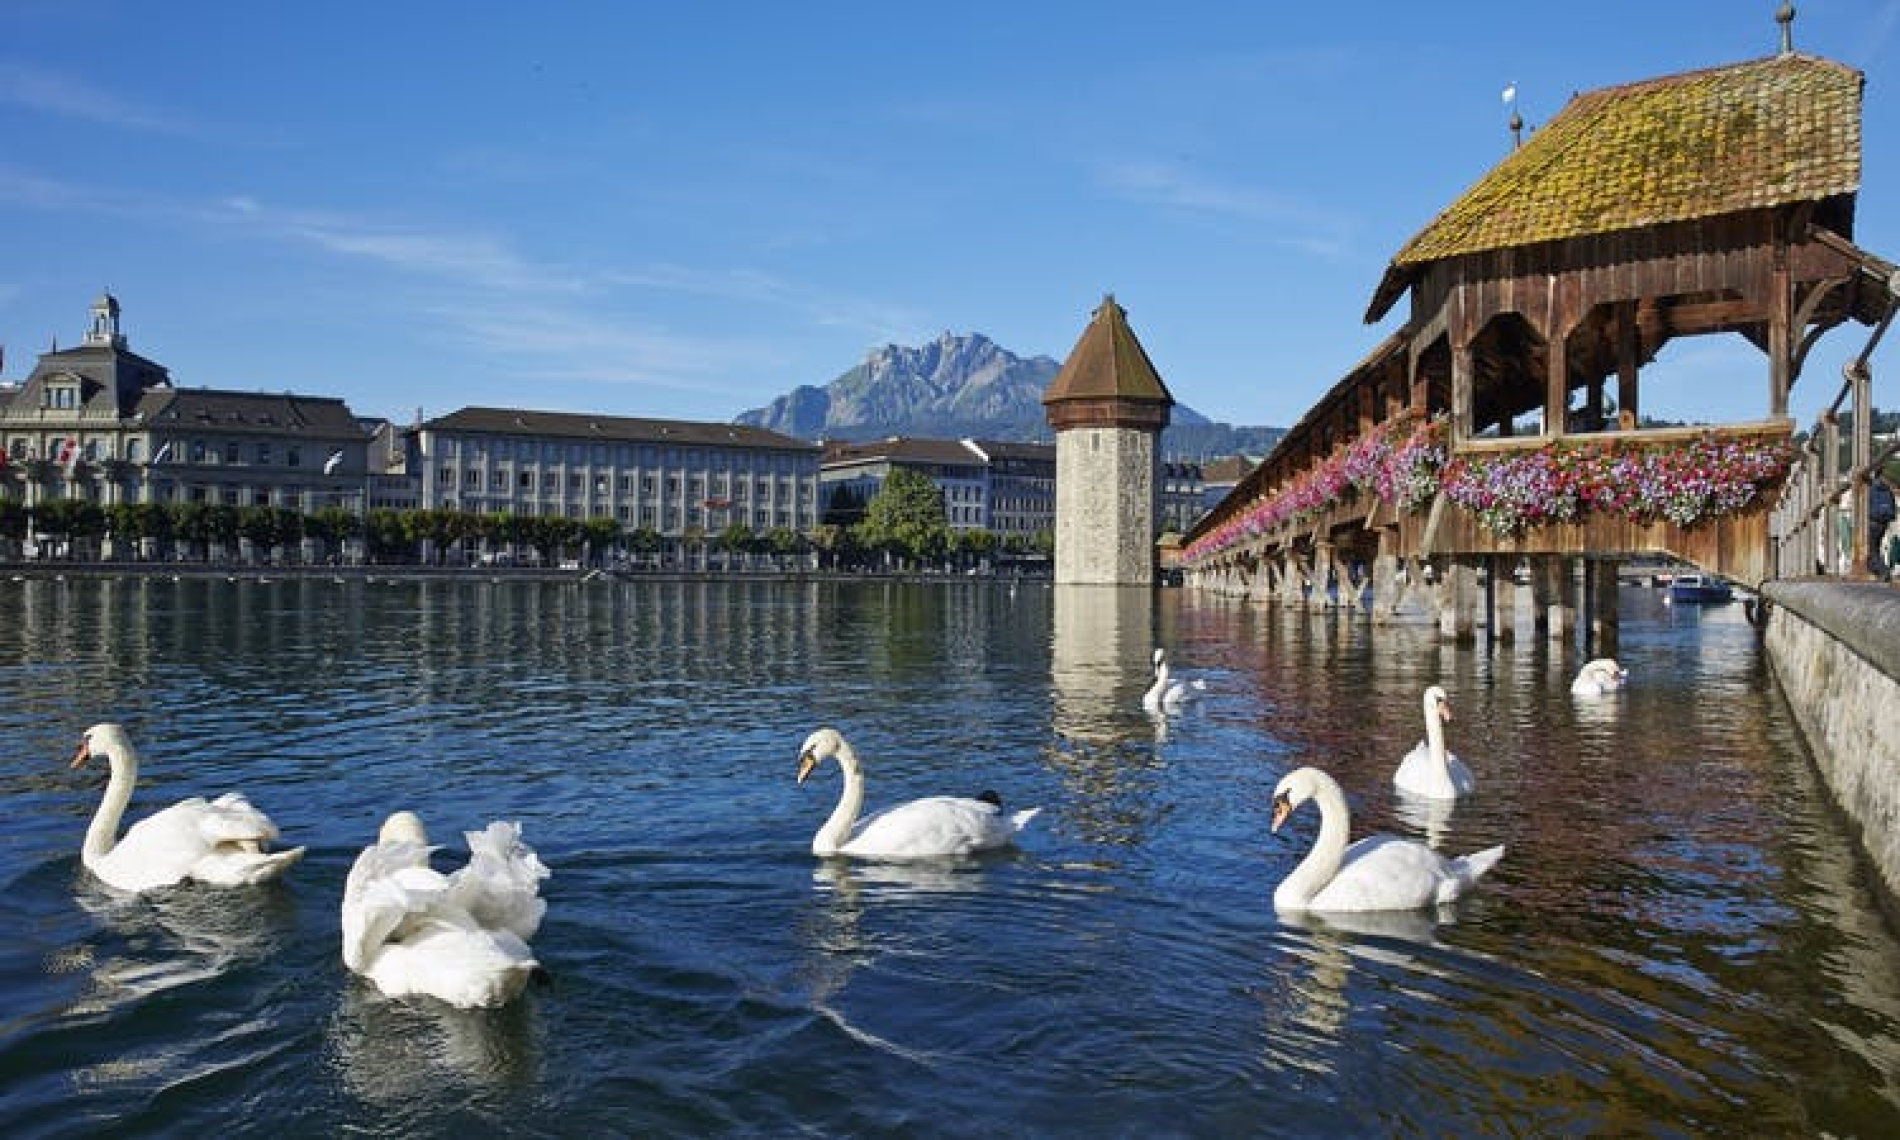 Most charming. Люцерн Швейцария фото. Люцерн Швейцария лебеди фото. Люцерн Швейцария лебеди фото вертикально.